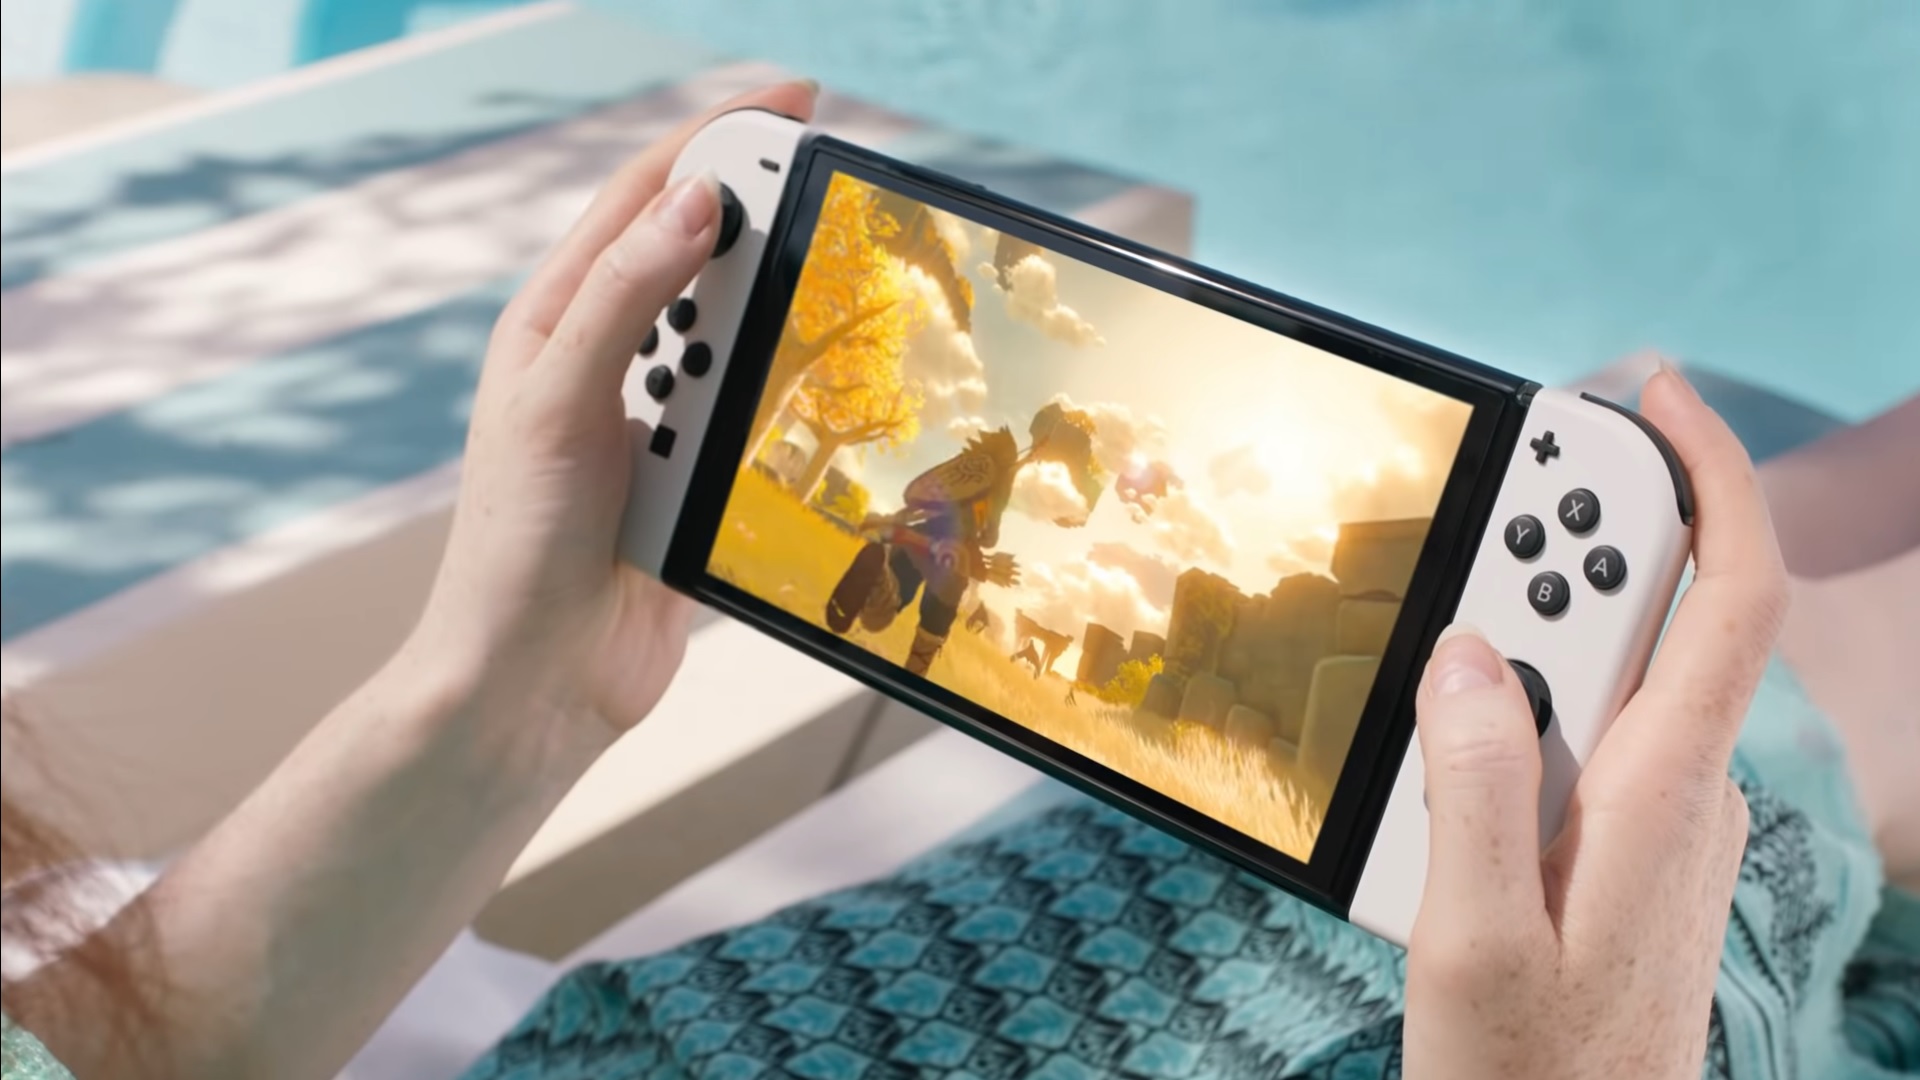 Jeux Nintendo Switch : jeux de rôle, action, sports et lutte